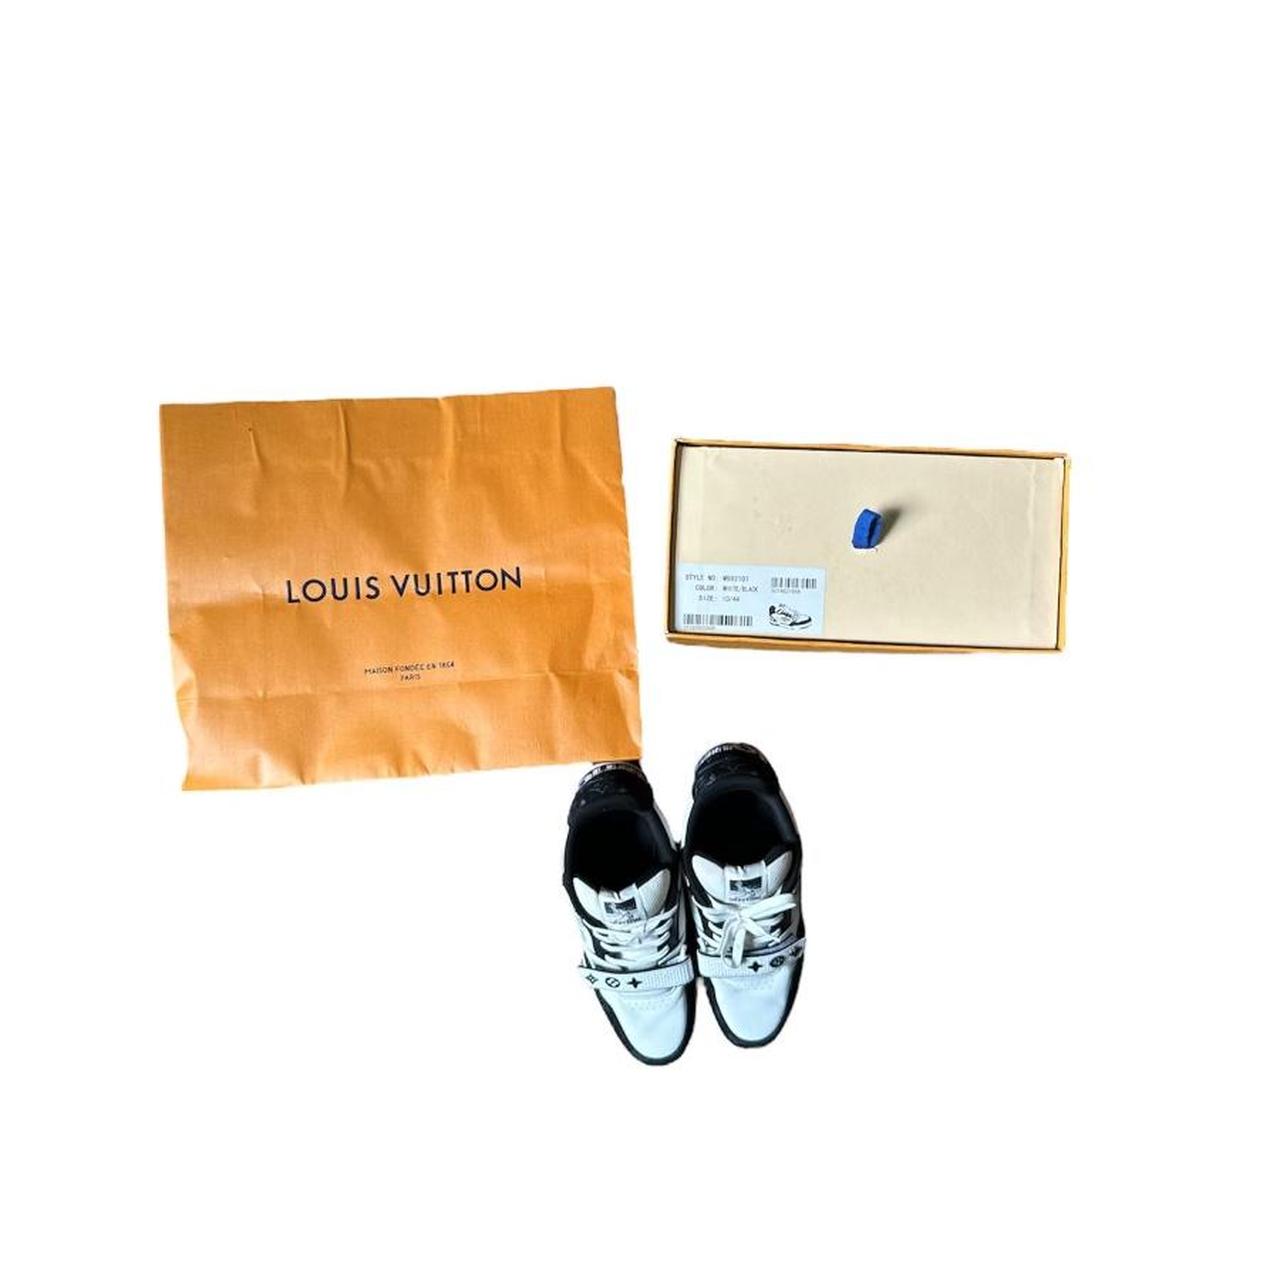 Louis Vuitton trainer Color: dark blue/black Size: - Depop